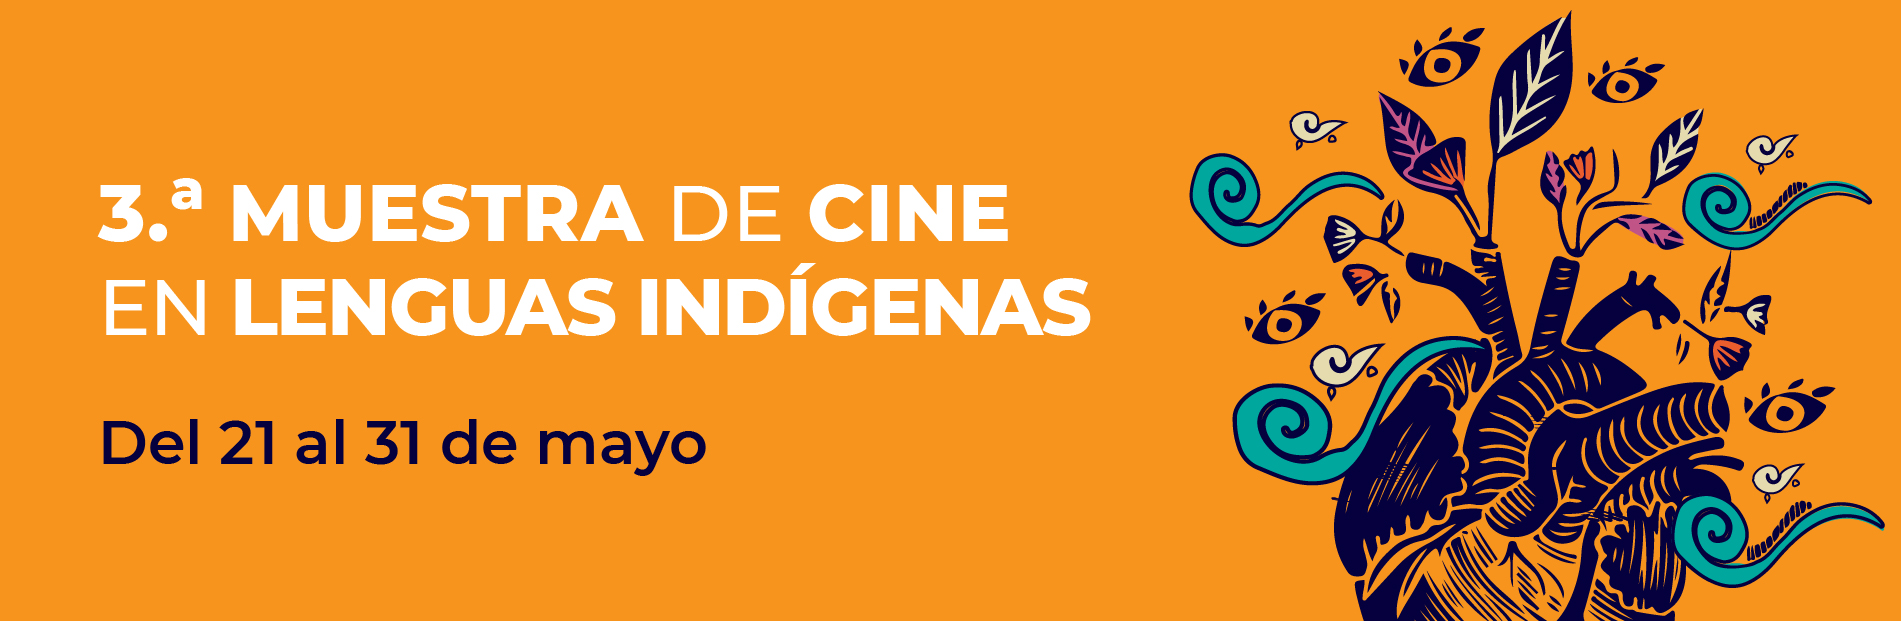 3ra. Muestra de Cine en Lenguas Indígenas mayo